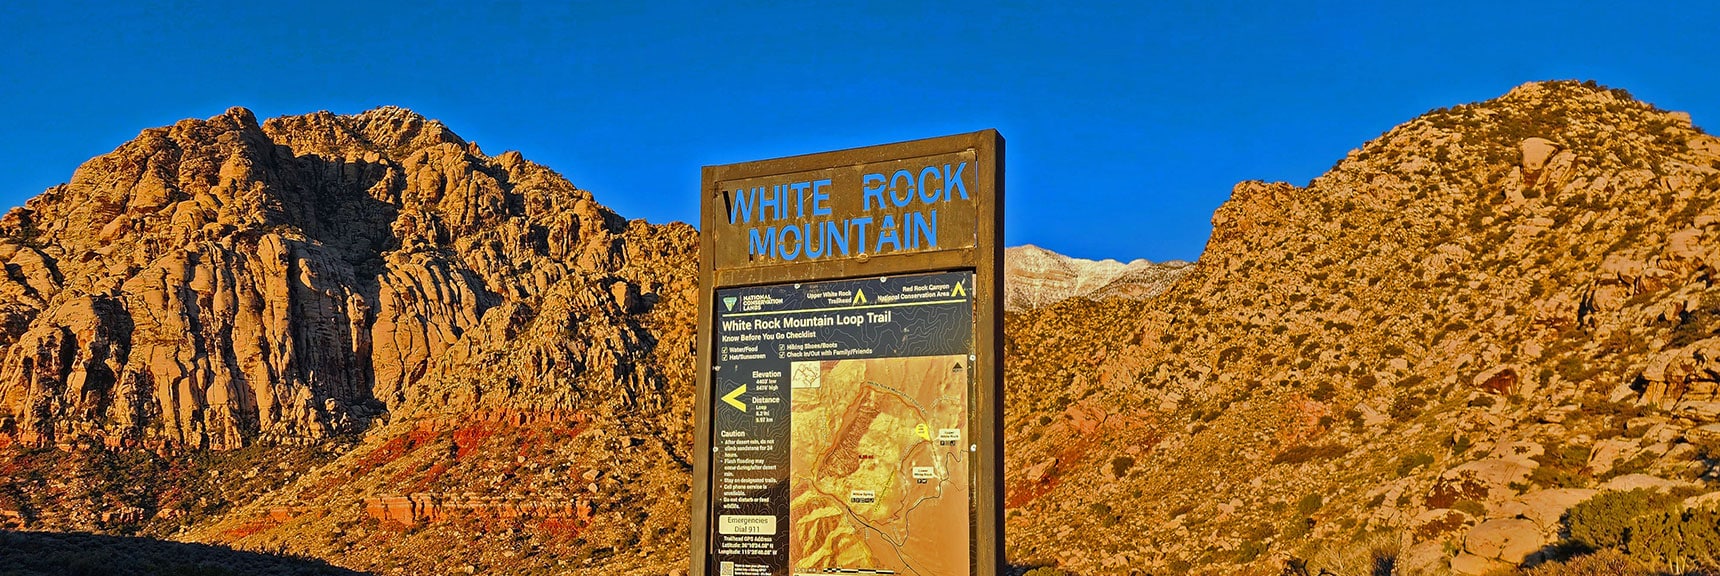 White Rock Mountain as Backdrop to Trailhead Sign | White Rock Mountain Loop Trail | Red Rock Canyon, Nevada